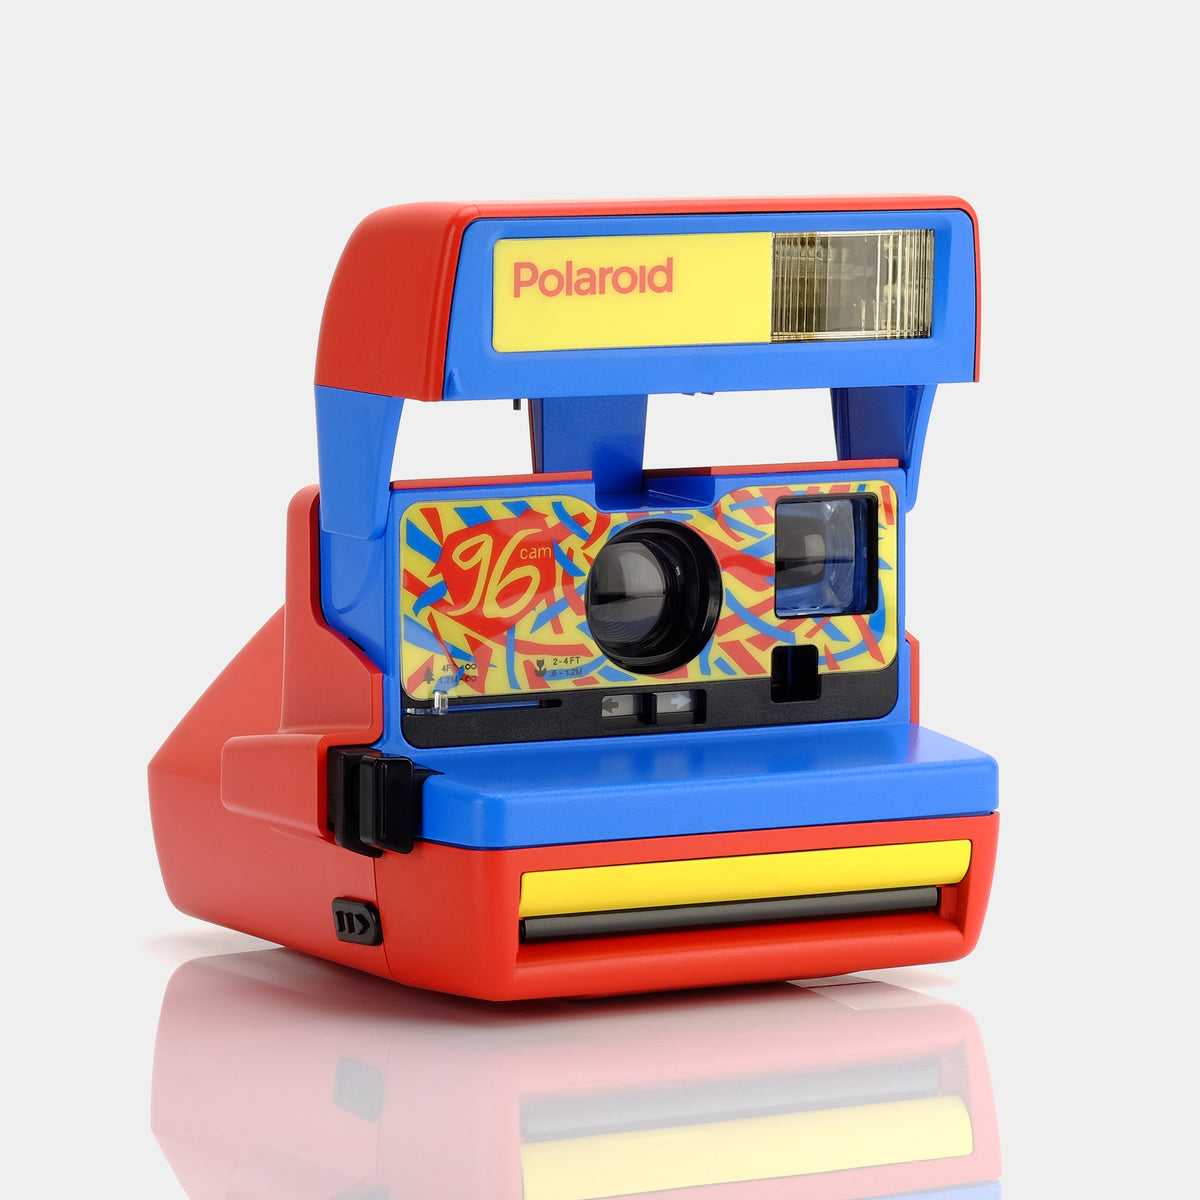 Polaroid Originals - Color Film for 600 - Metallic Red Frame - Film for  Polaroid Originals 600 Cameras - OneStep 2 - Avvenice